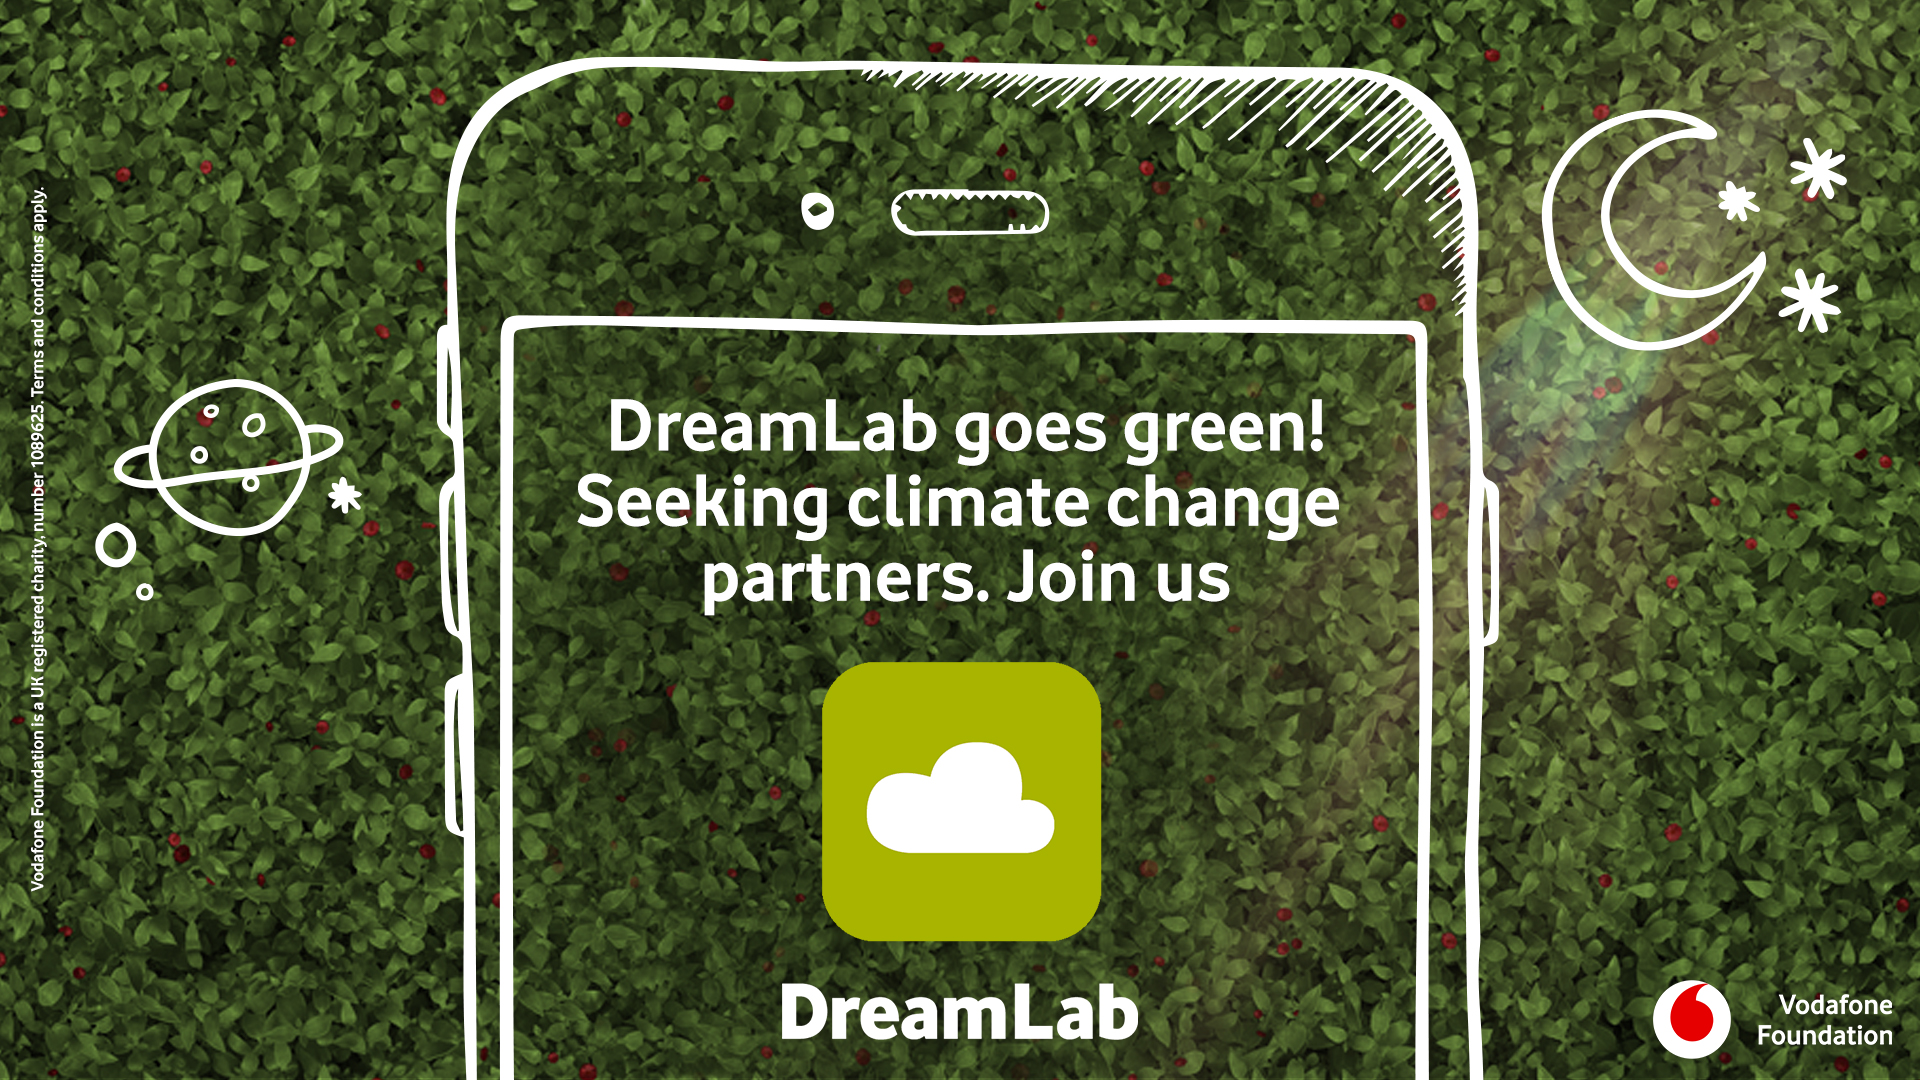 Fundația Vodafone și DreamLab caută parteneri de cercetare în domeniul schimbărilor climatice